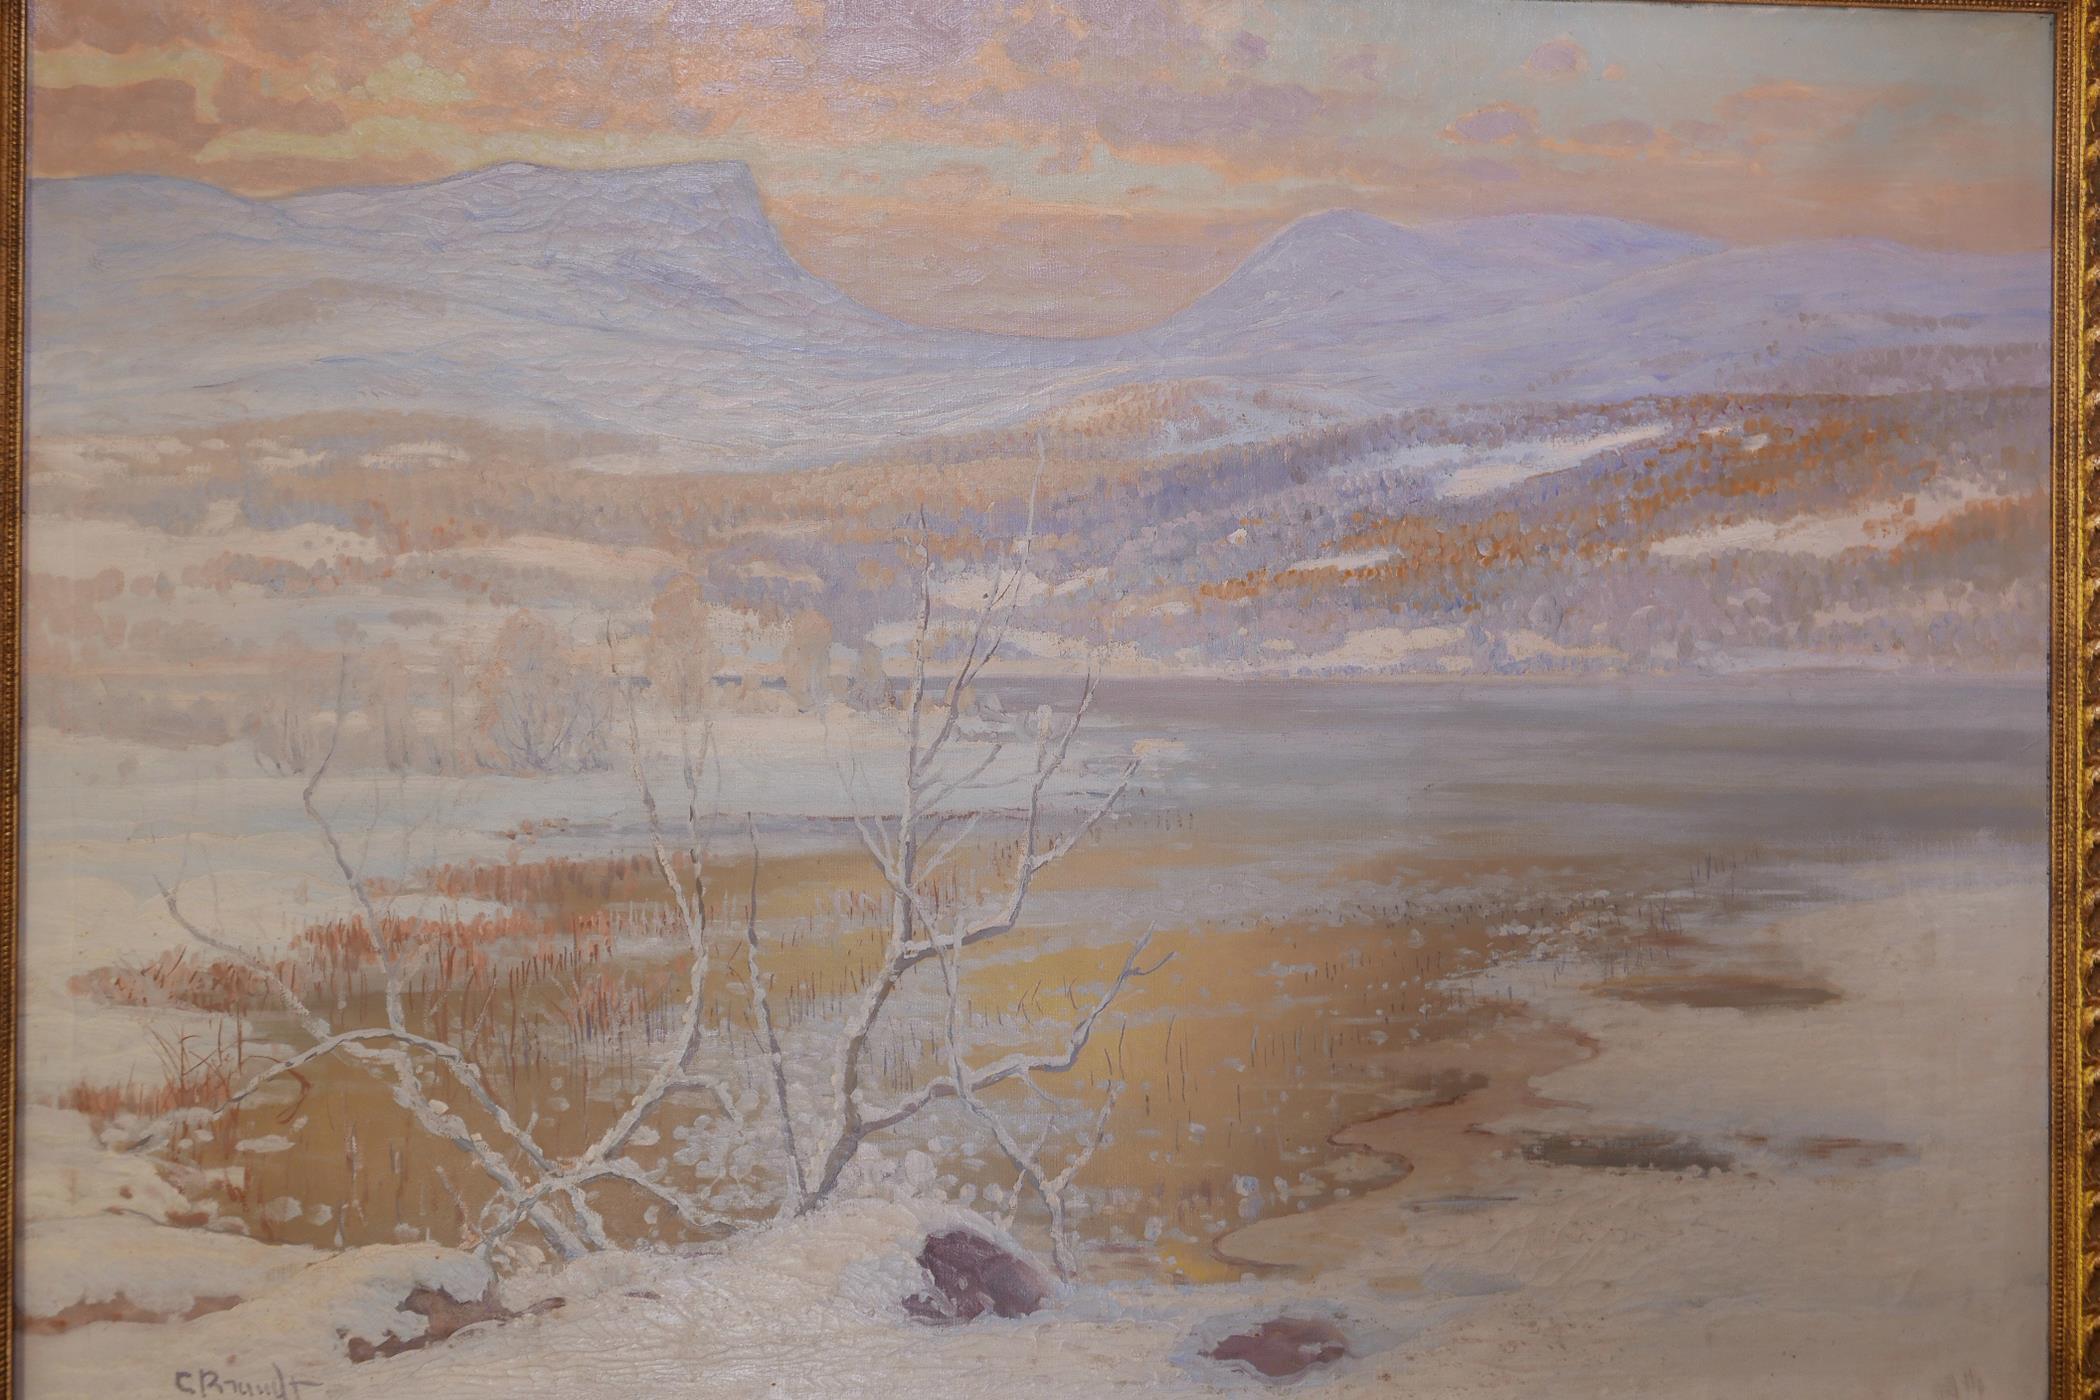 C. (Carl) Rundt, bleak winter fjord scene, signed, oil on canvas, 49" x 35"